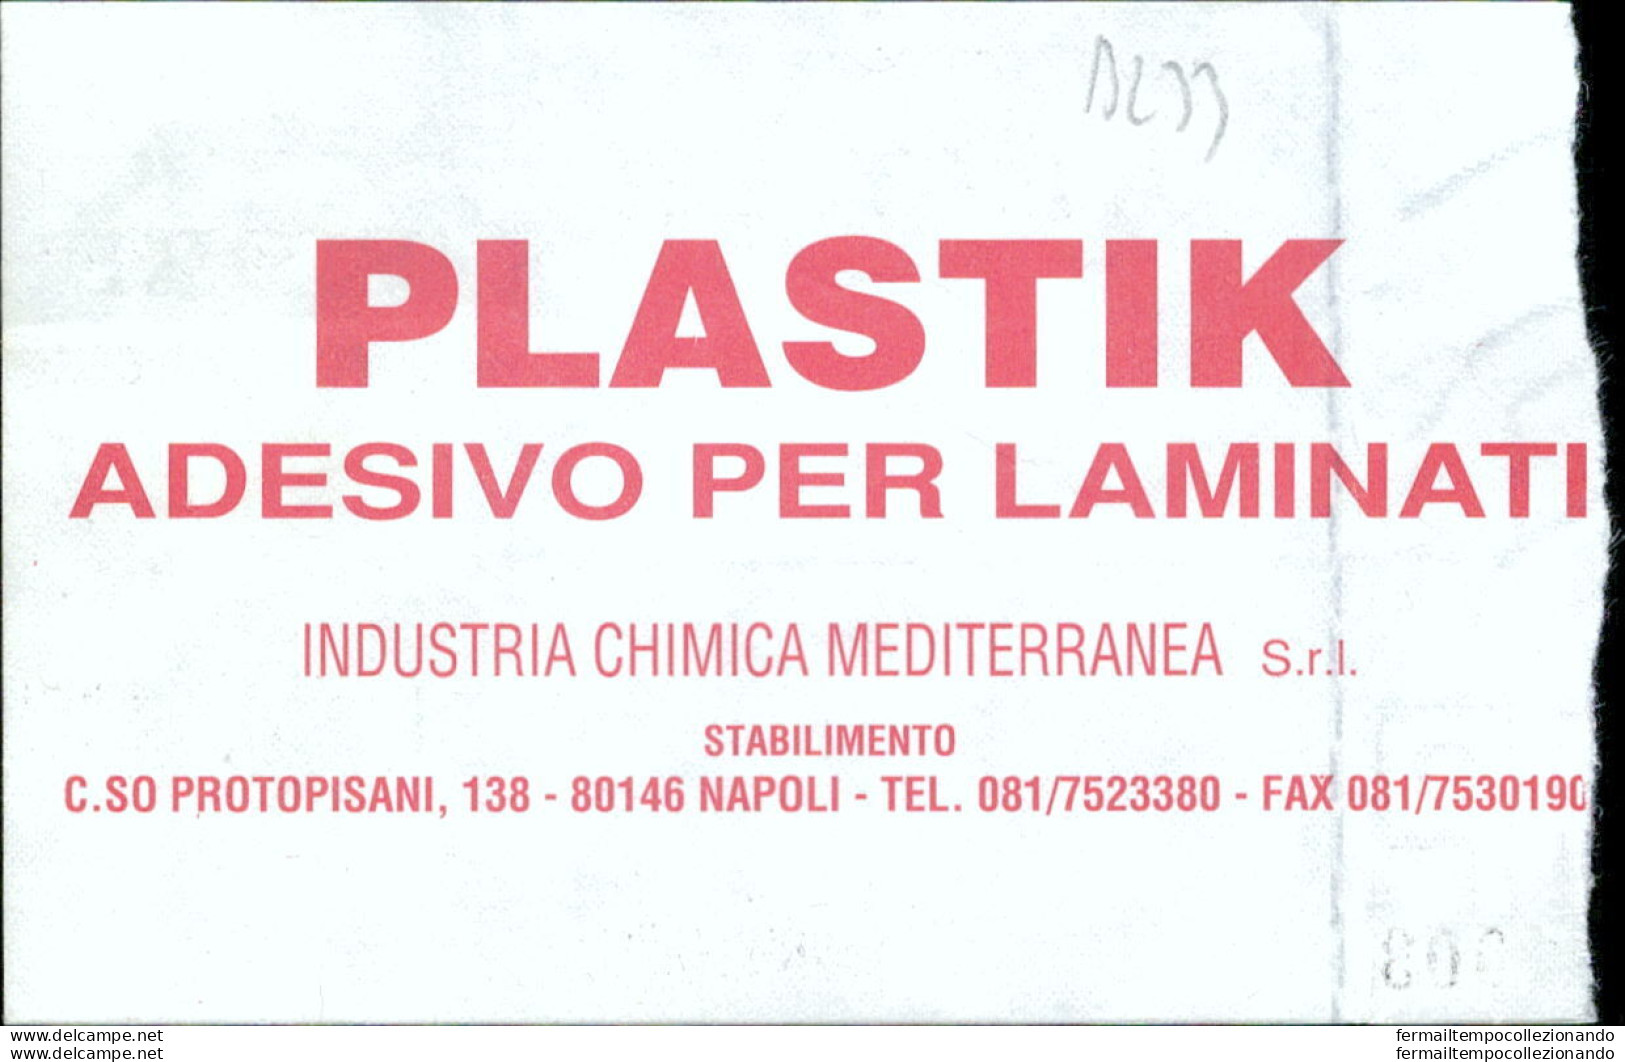 Bl33 Biglietto Calcio Ticket  Juve Stabia - Lecce 1995-96 - Biglietti D'ingresso